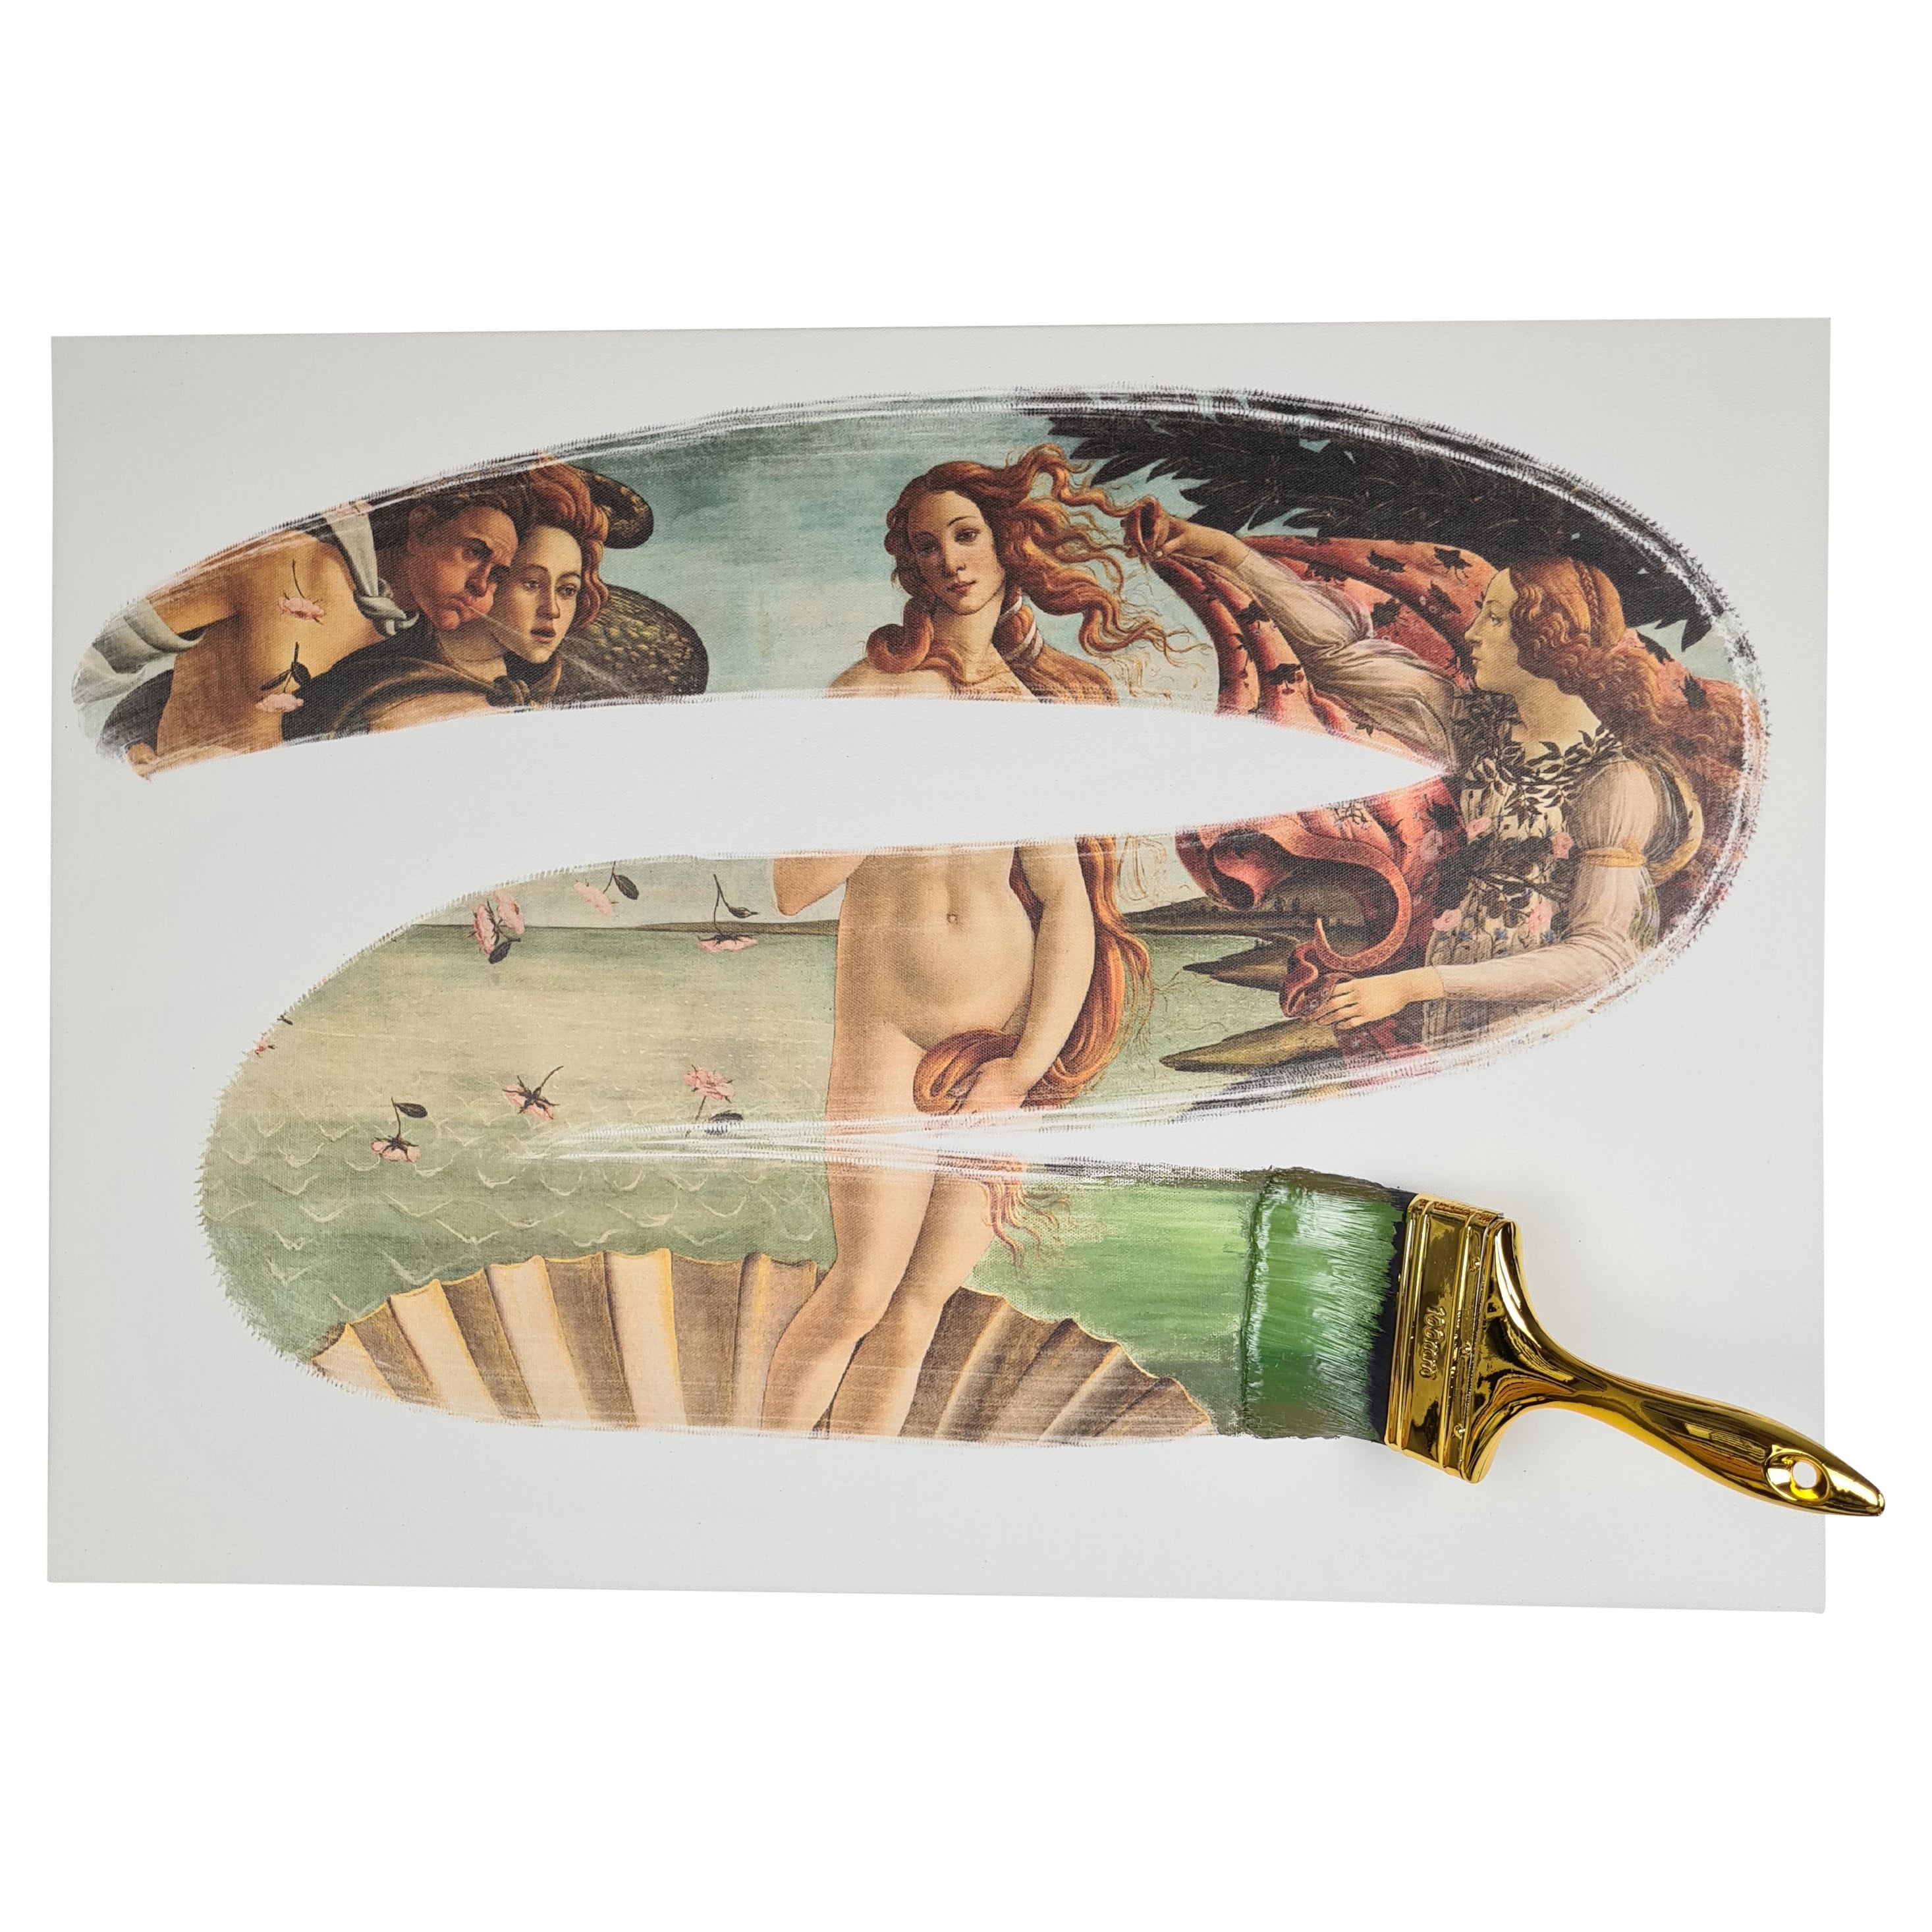 « La naissance de Vénus », copie de Botticelli sur toile, fabriquée à la main en Italie, 2021